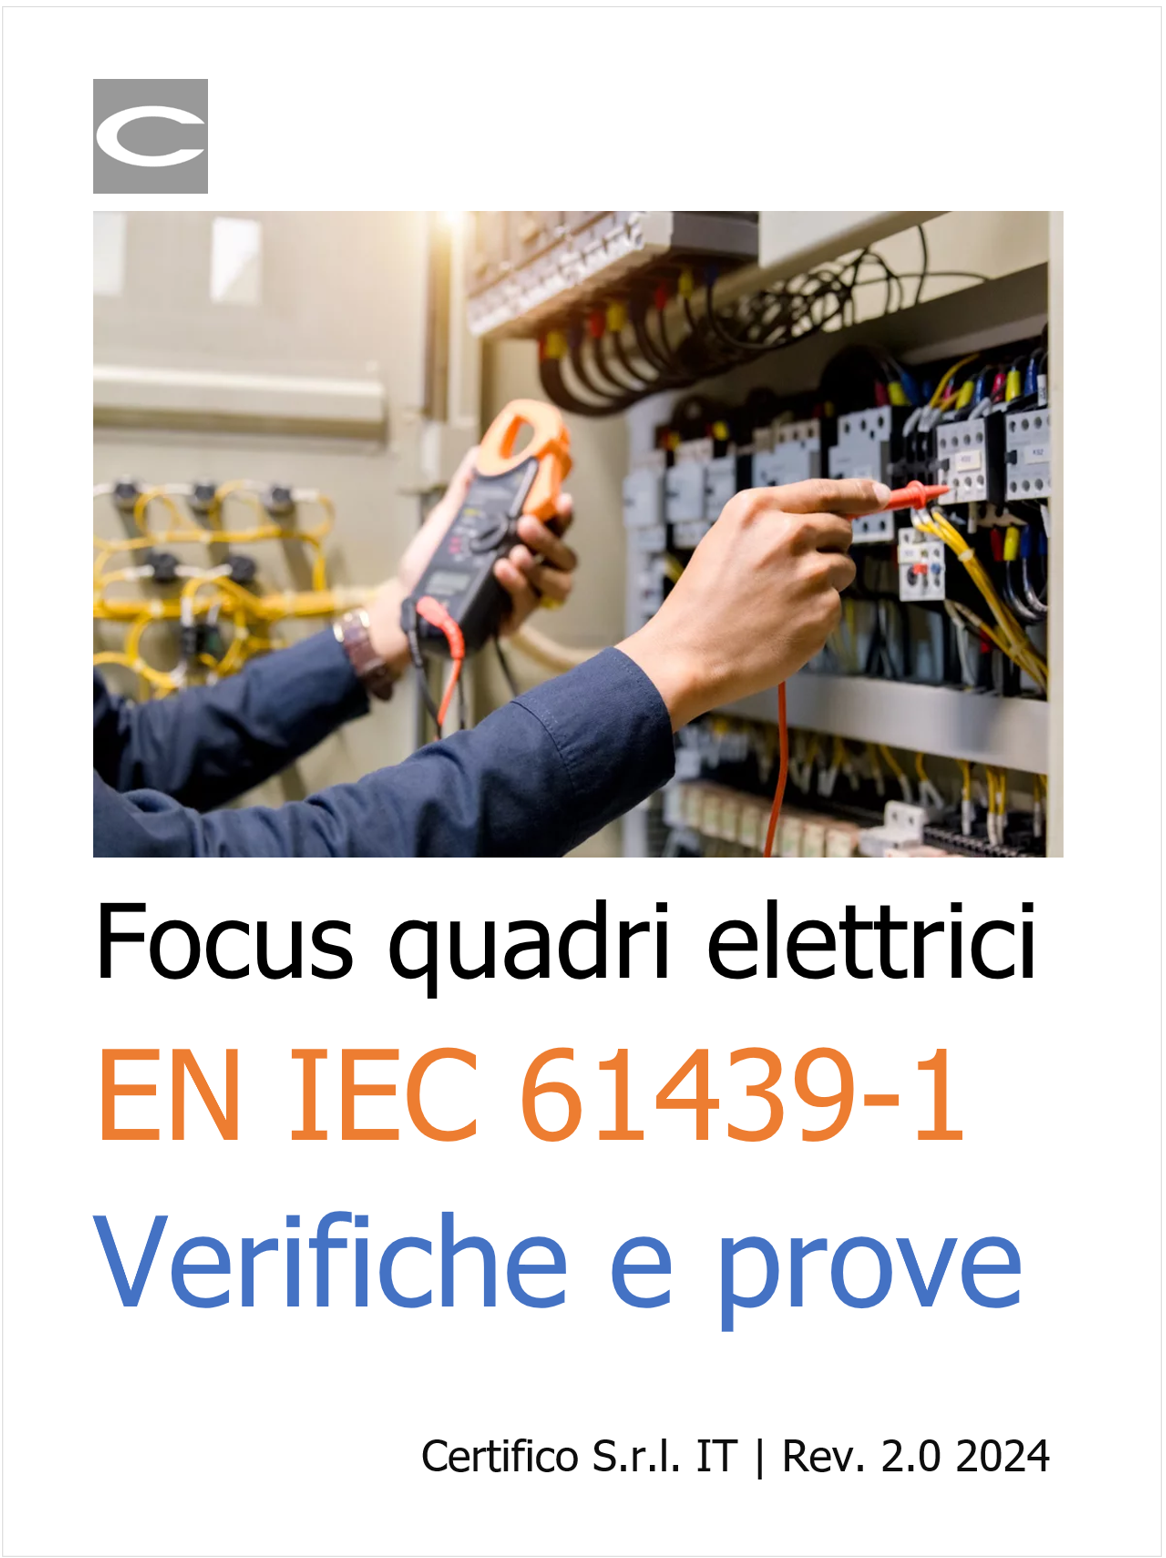 Verifiche Prove EN IEC 61439 1